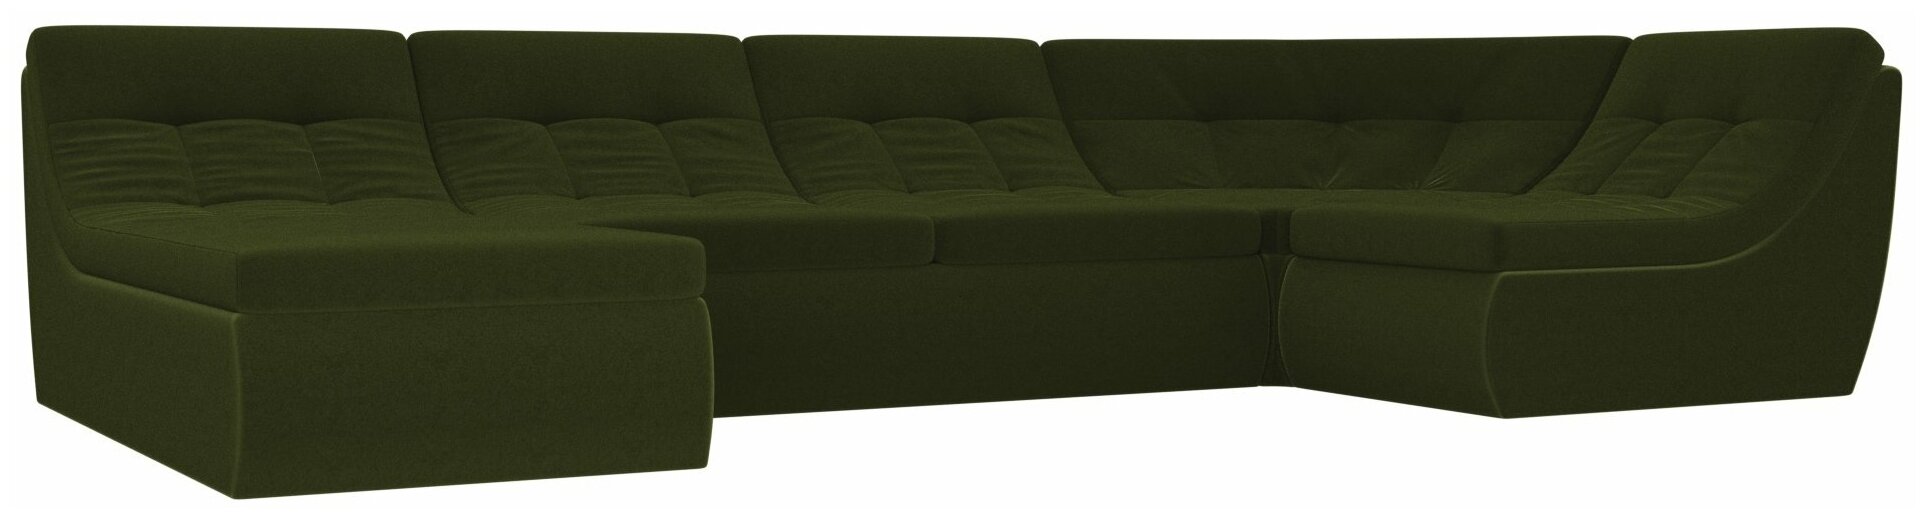 П-образный модульный диван Холидей, Микровельвет, Модель 101854